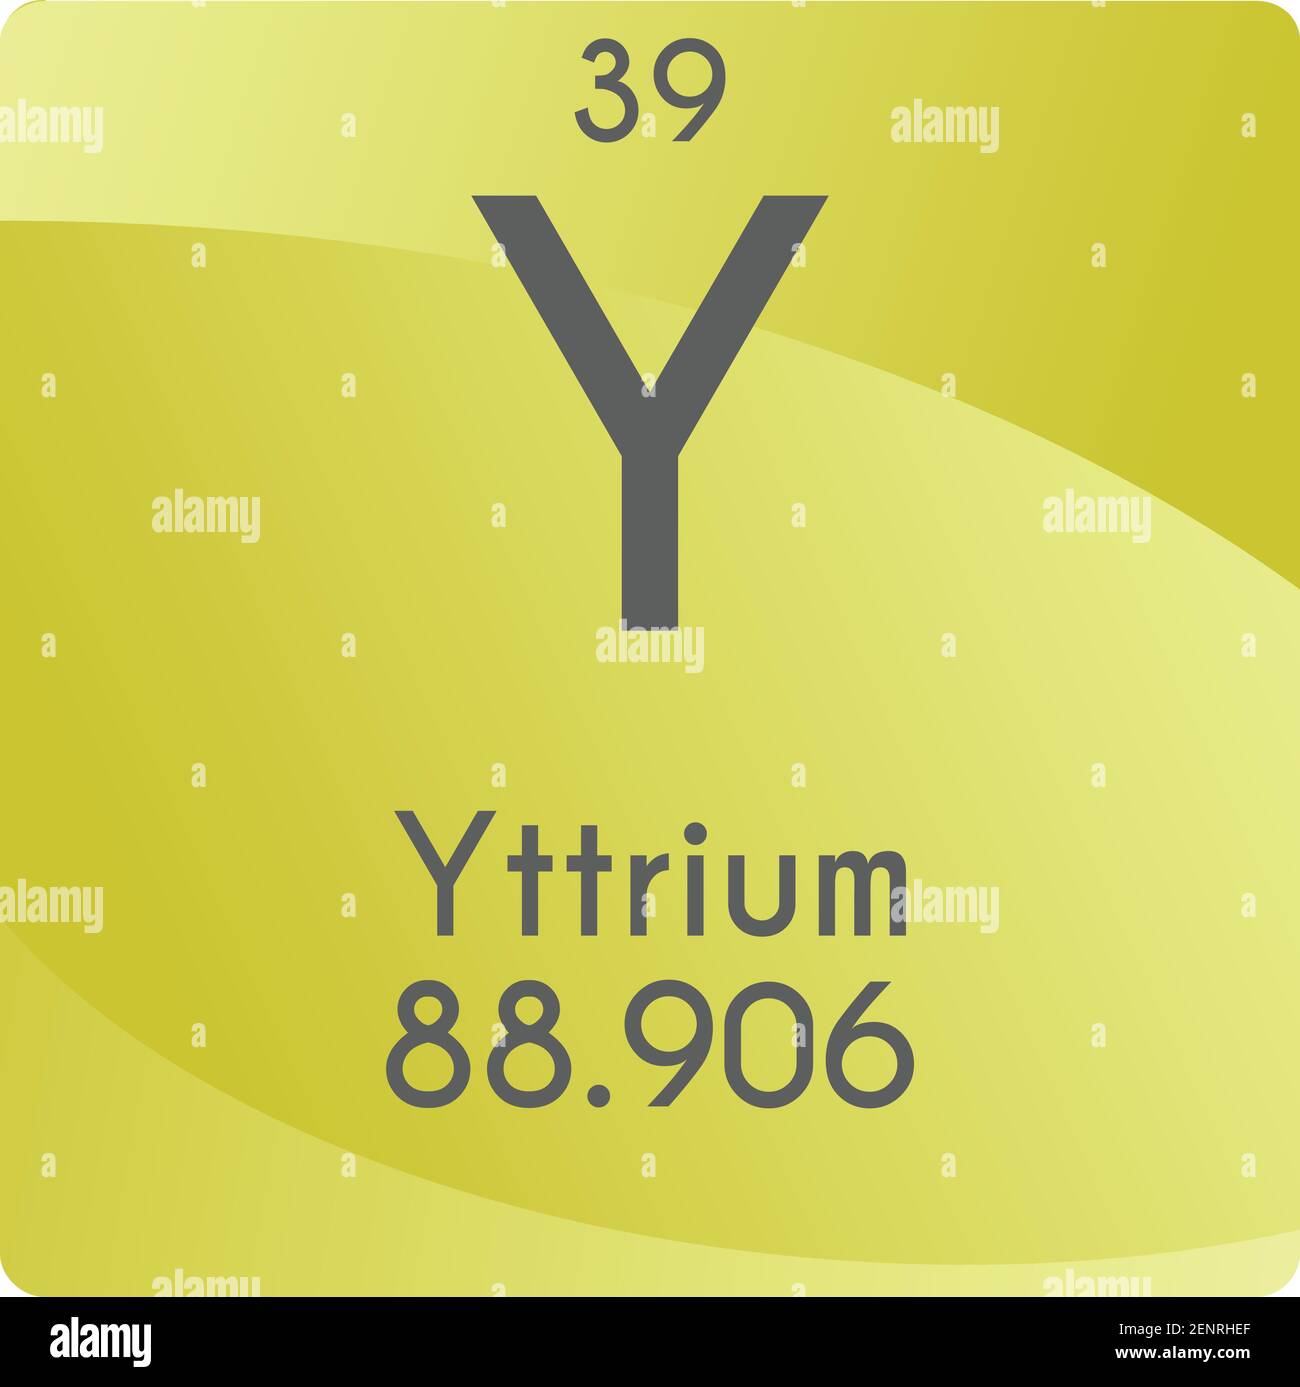 Y Yttrium Transition Metal Chemisches Element Vektor Grafik, mit Ordnungszahl und Masse. Einfaches, flaches Gradientendesign für Bildung, Labor, Stock Vektor